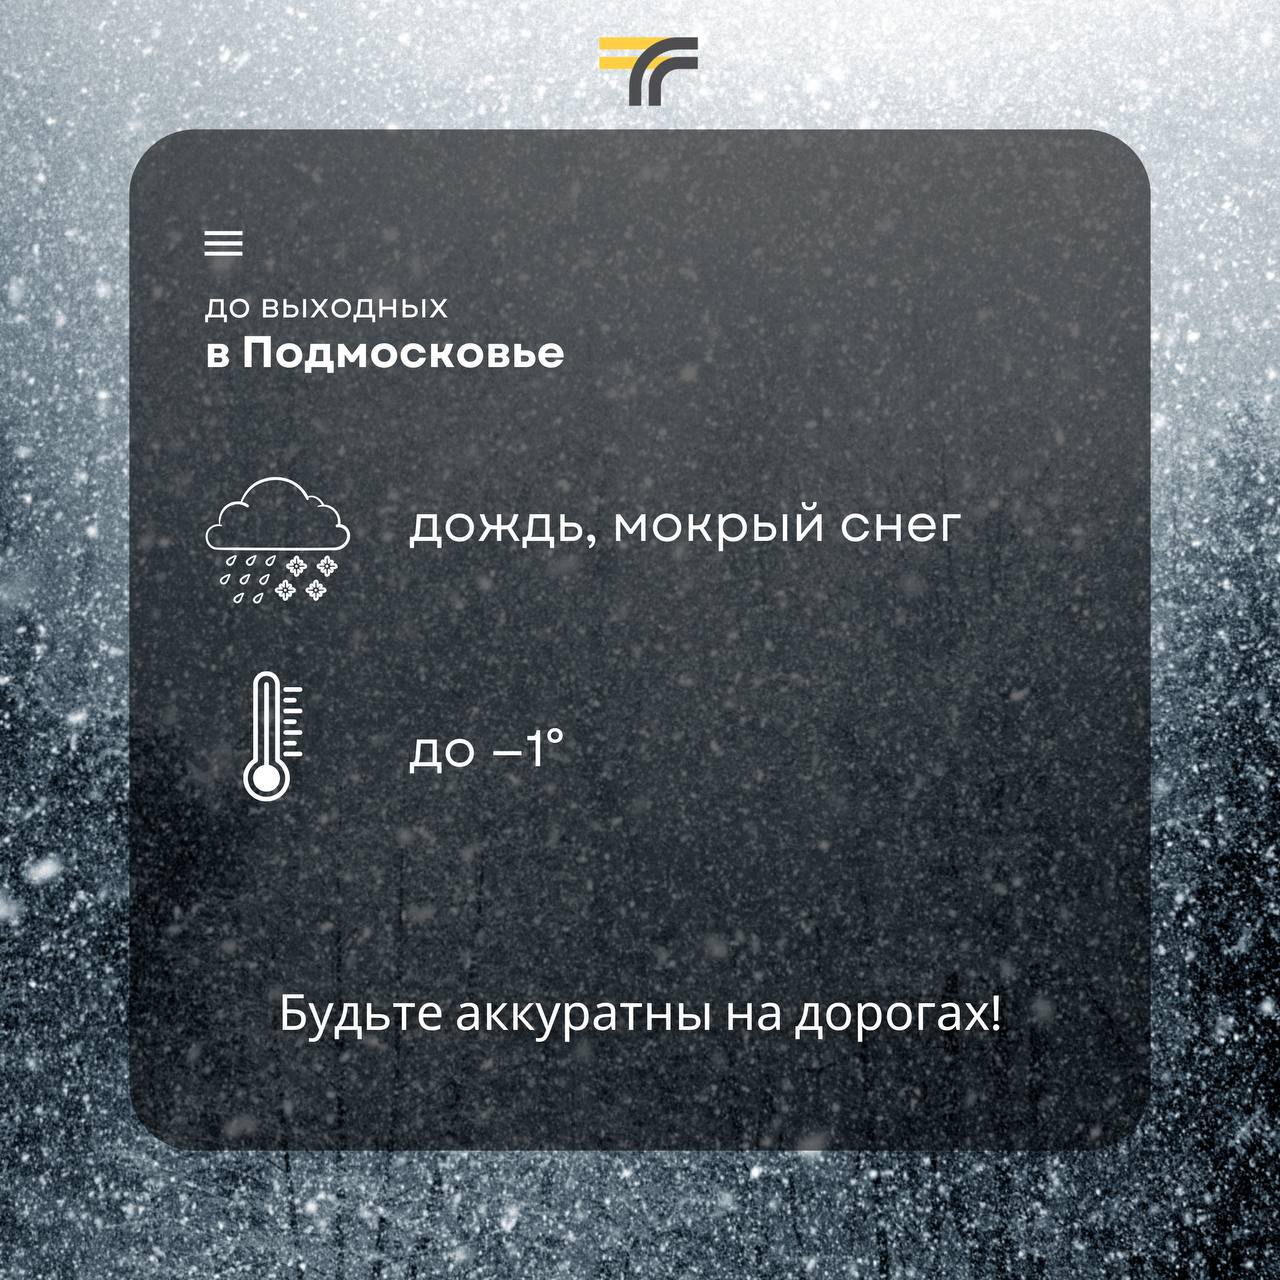 Погода в Подмосковье